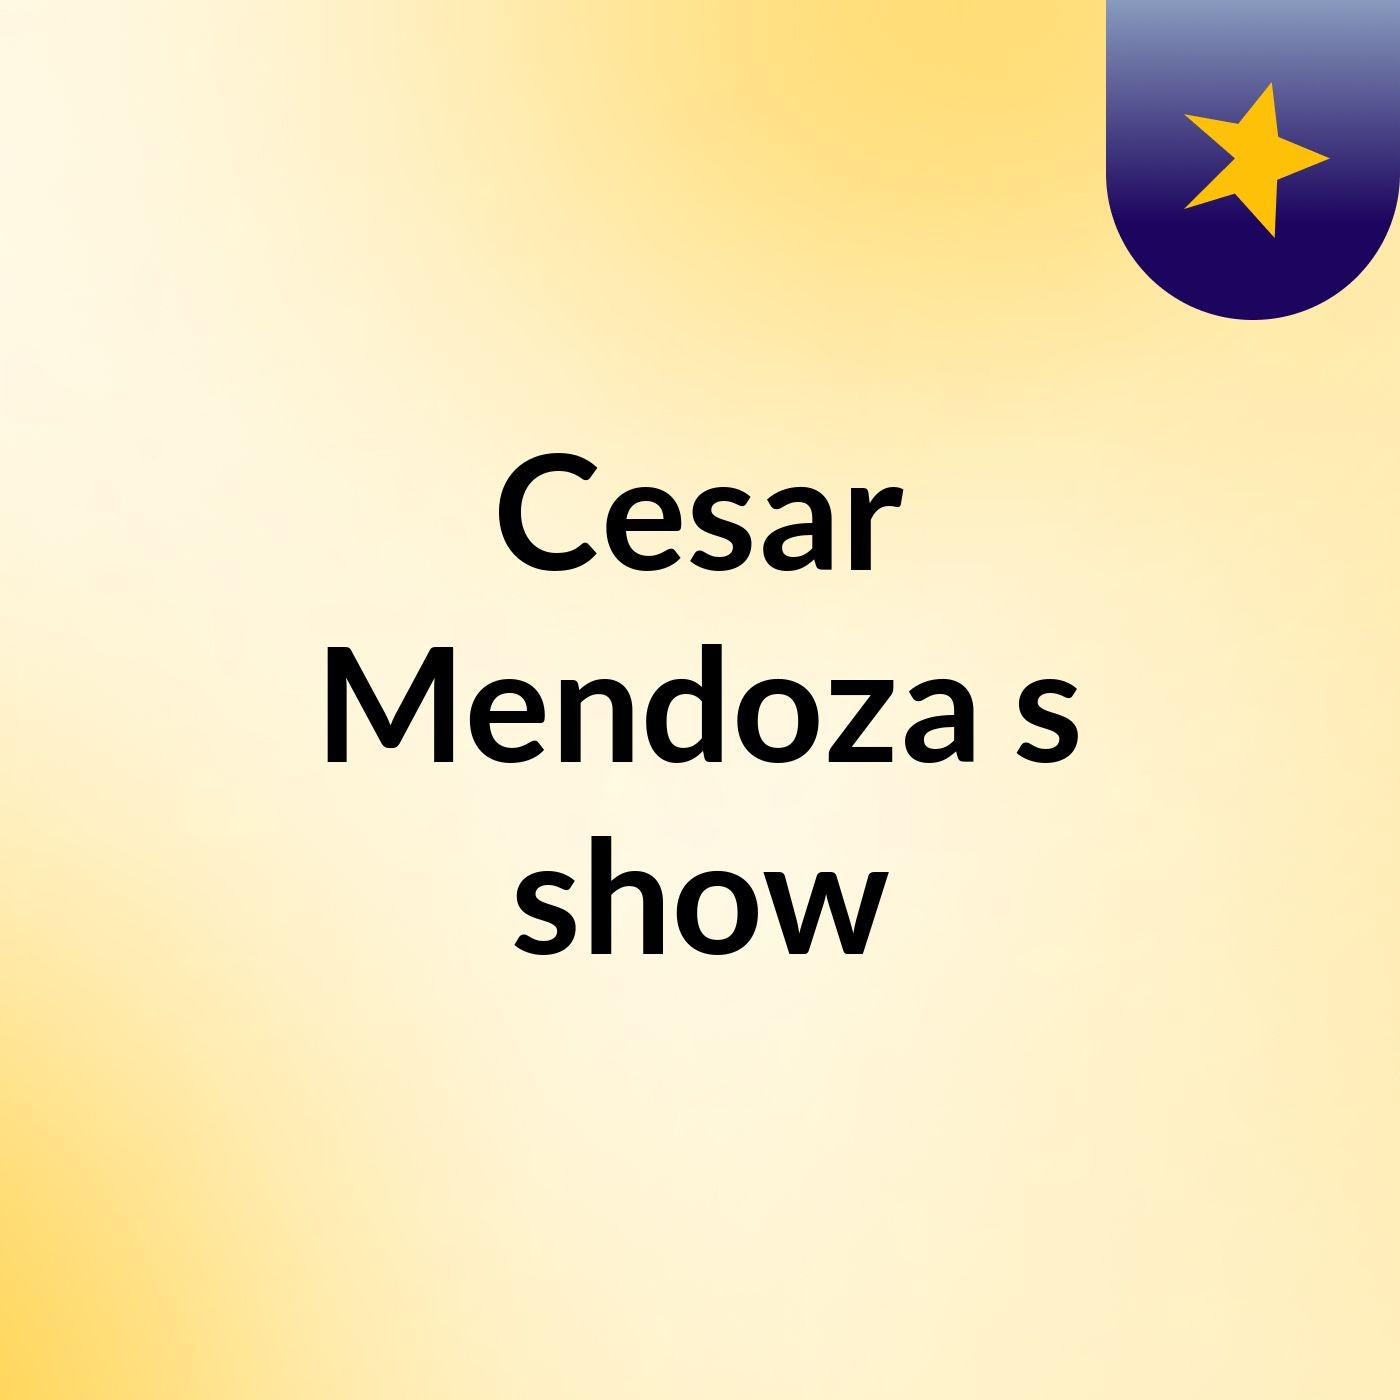 Cesar Mendoza's show